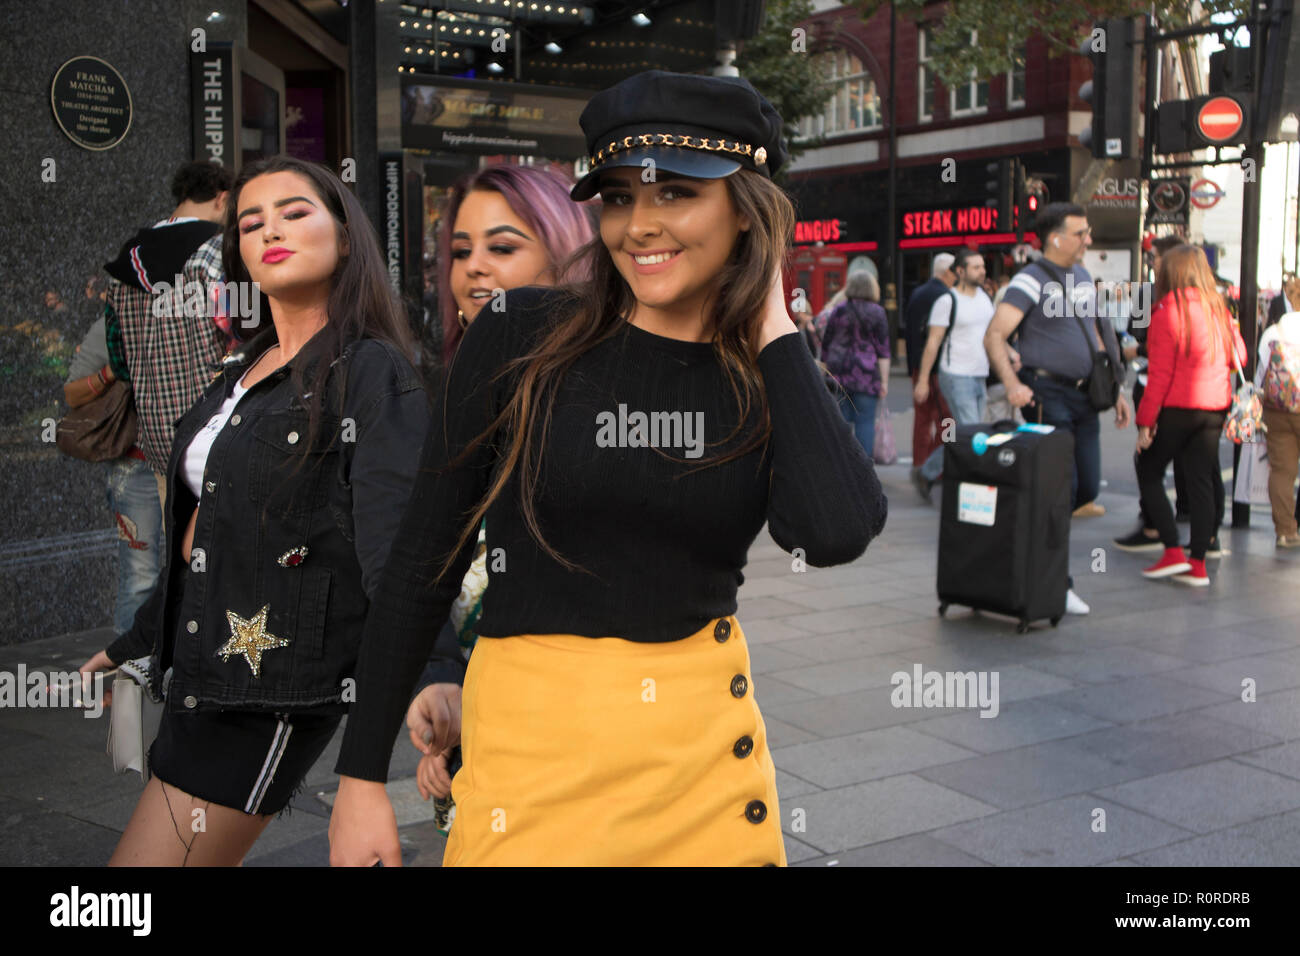 Londres, Inglaterra - 15 de septiembre de 2018, una multitud de personas están caminando a lo largo de Street. Amigos de moda en faldas cortas posando Fotografía de stock -